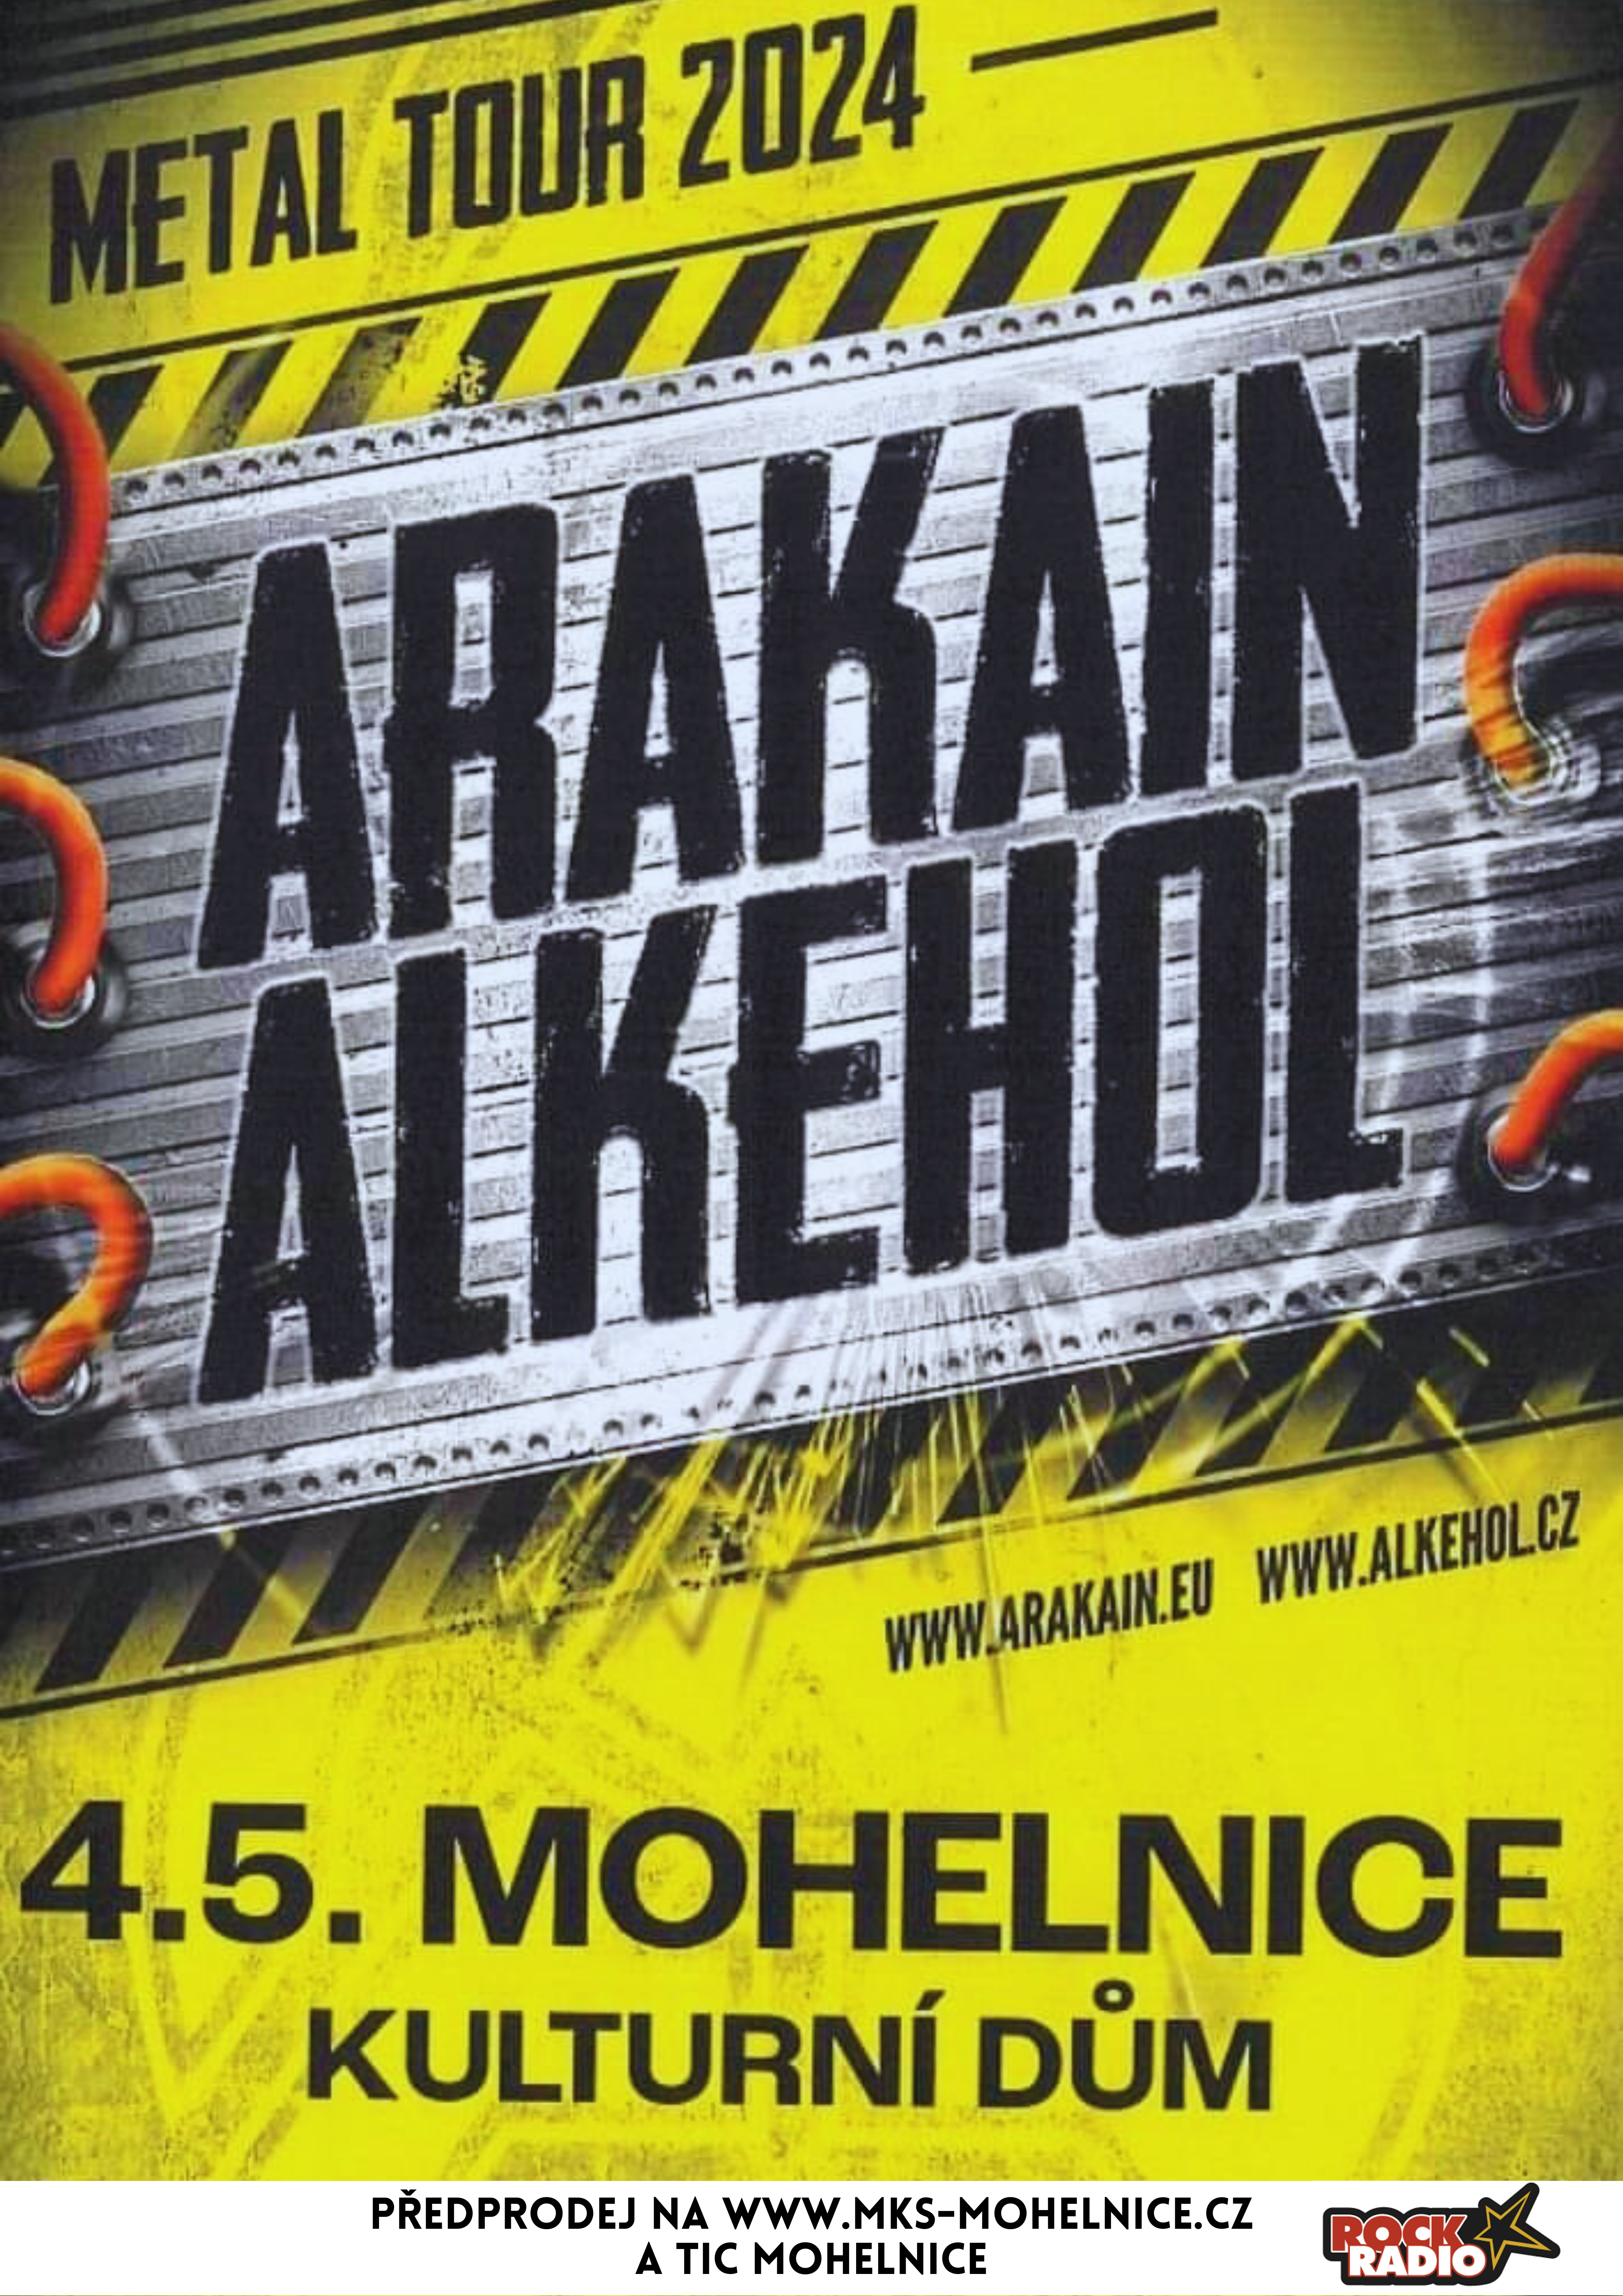 www.mks-mohelnice.cz/akce/9535-arakain-alkohol-metal-tour-2024-xonc